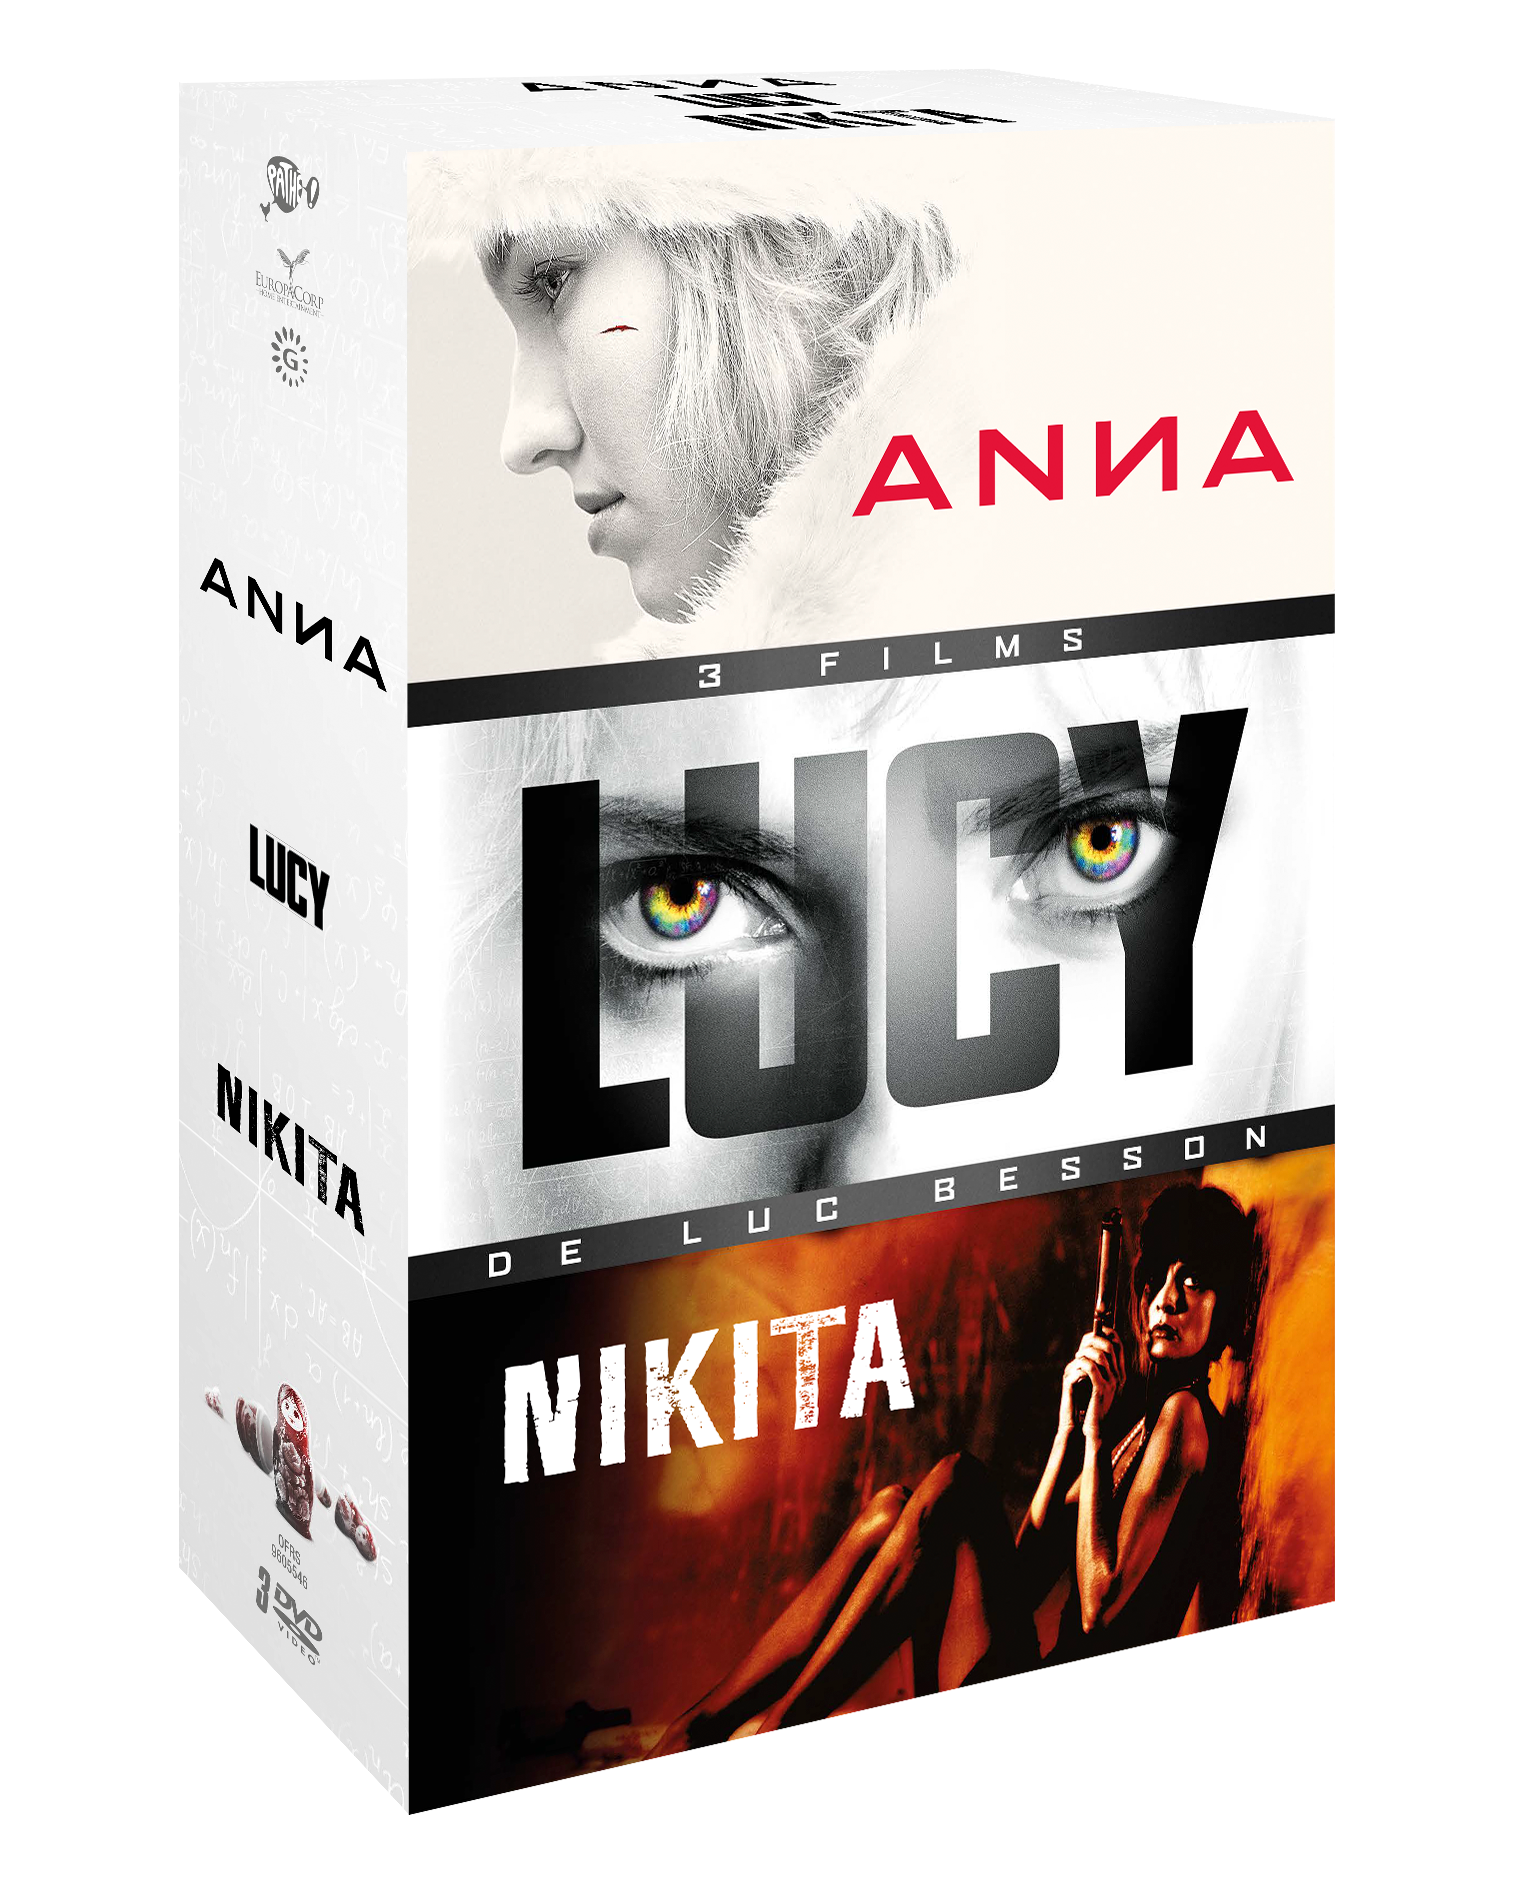 COFFRET BESSON - ANNA/NIKITA/LUCY